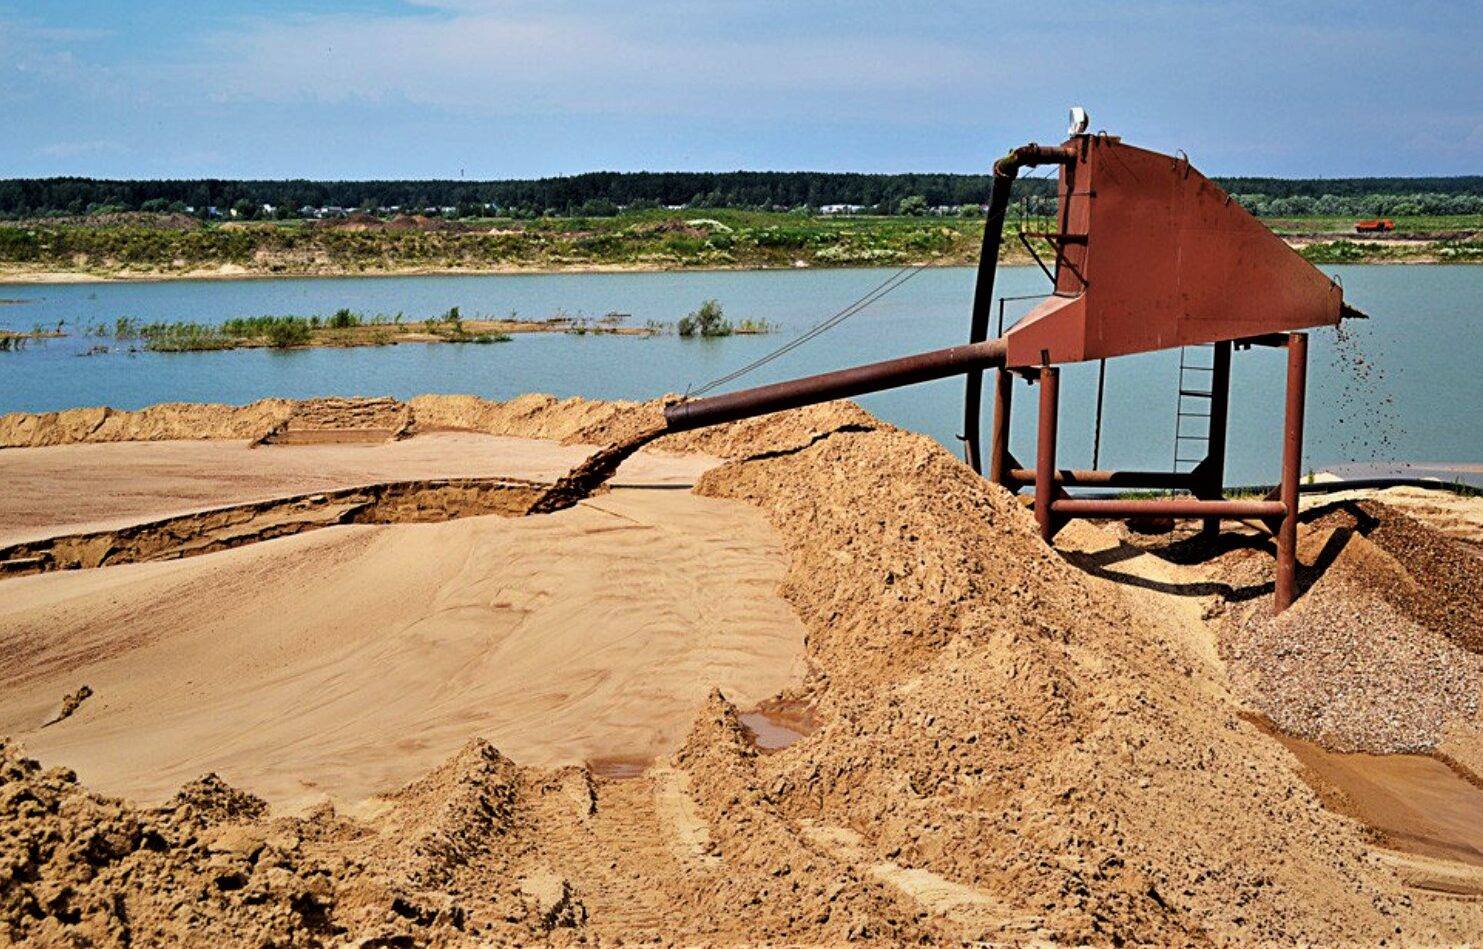 Строительный песок – карьерный или речной?